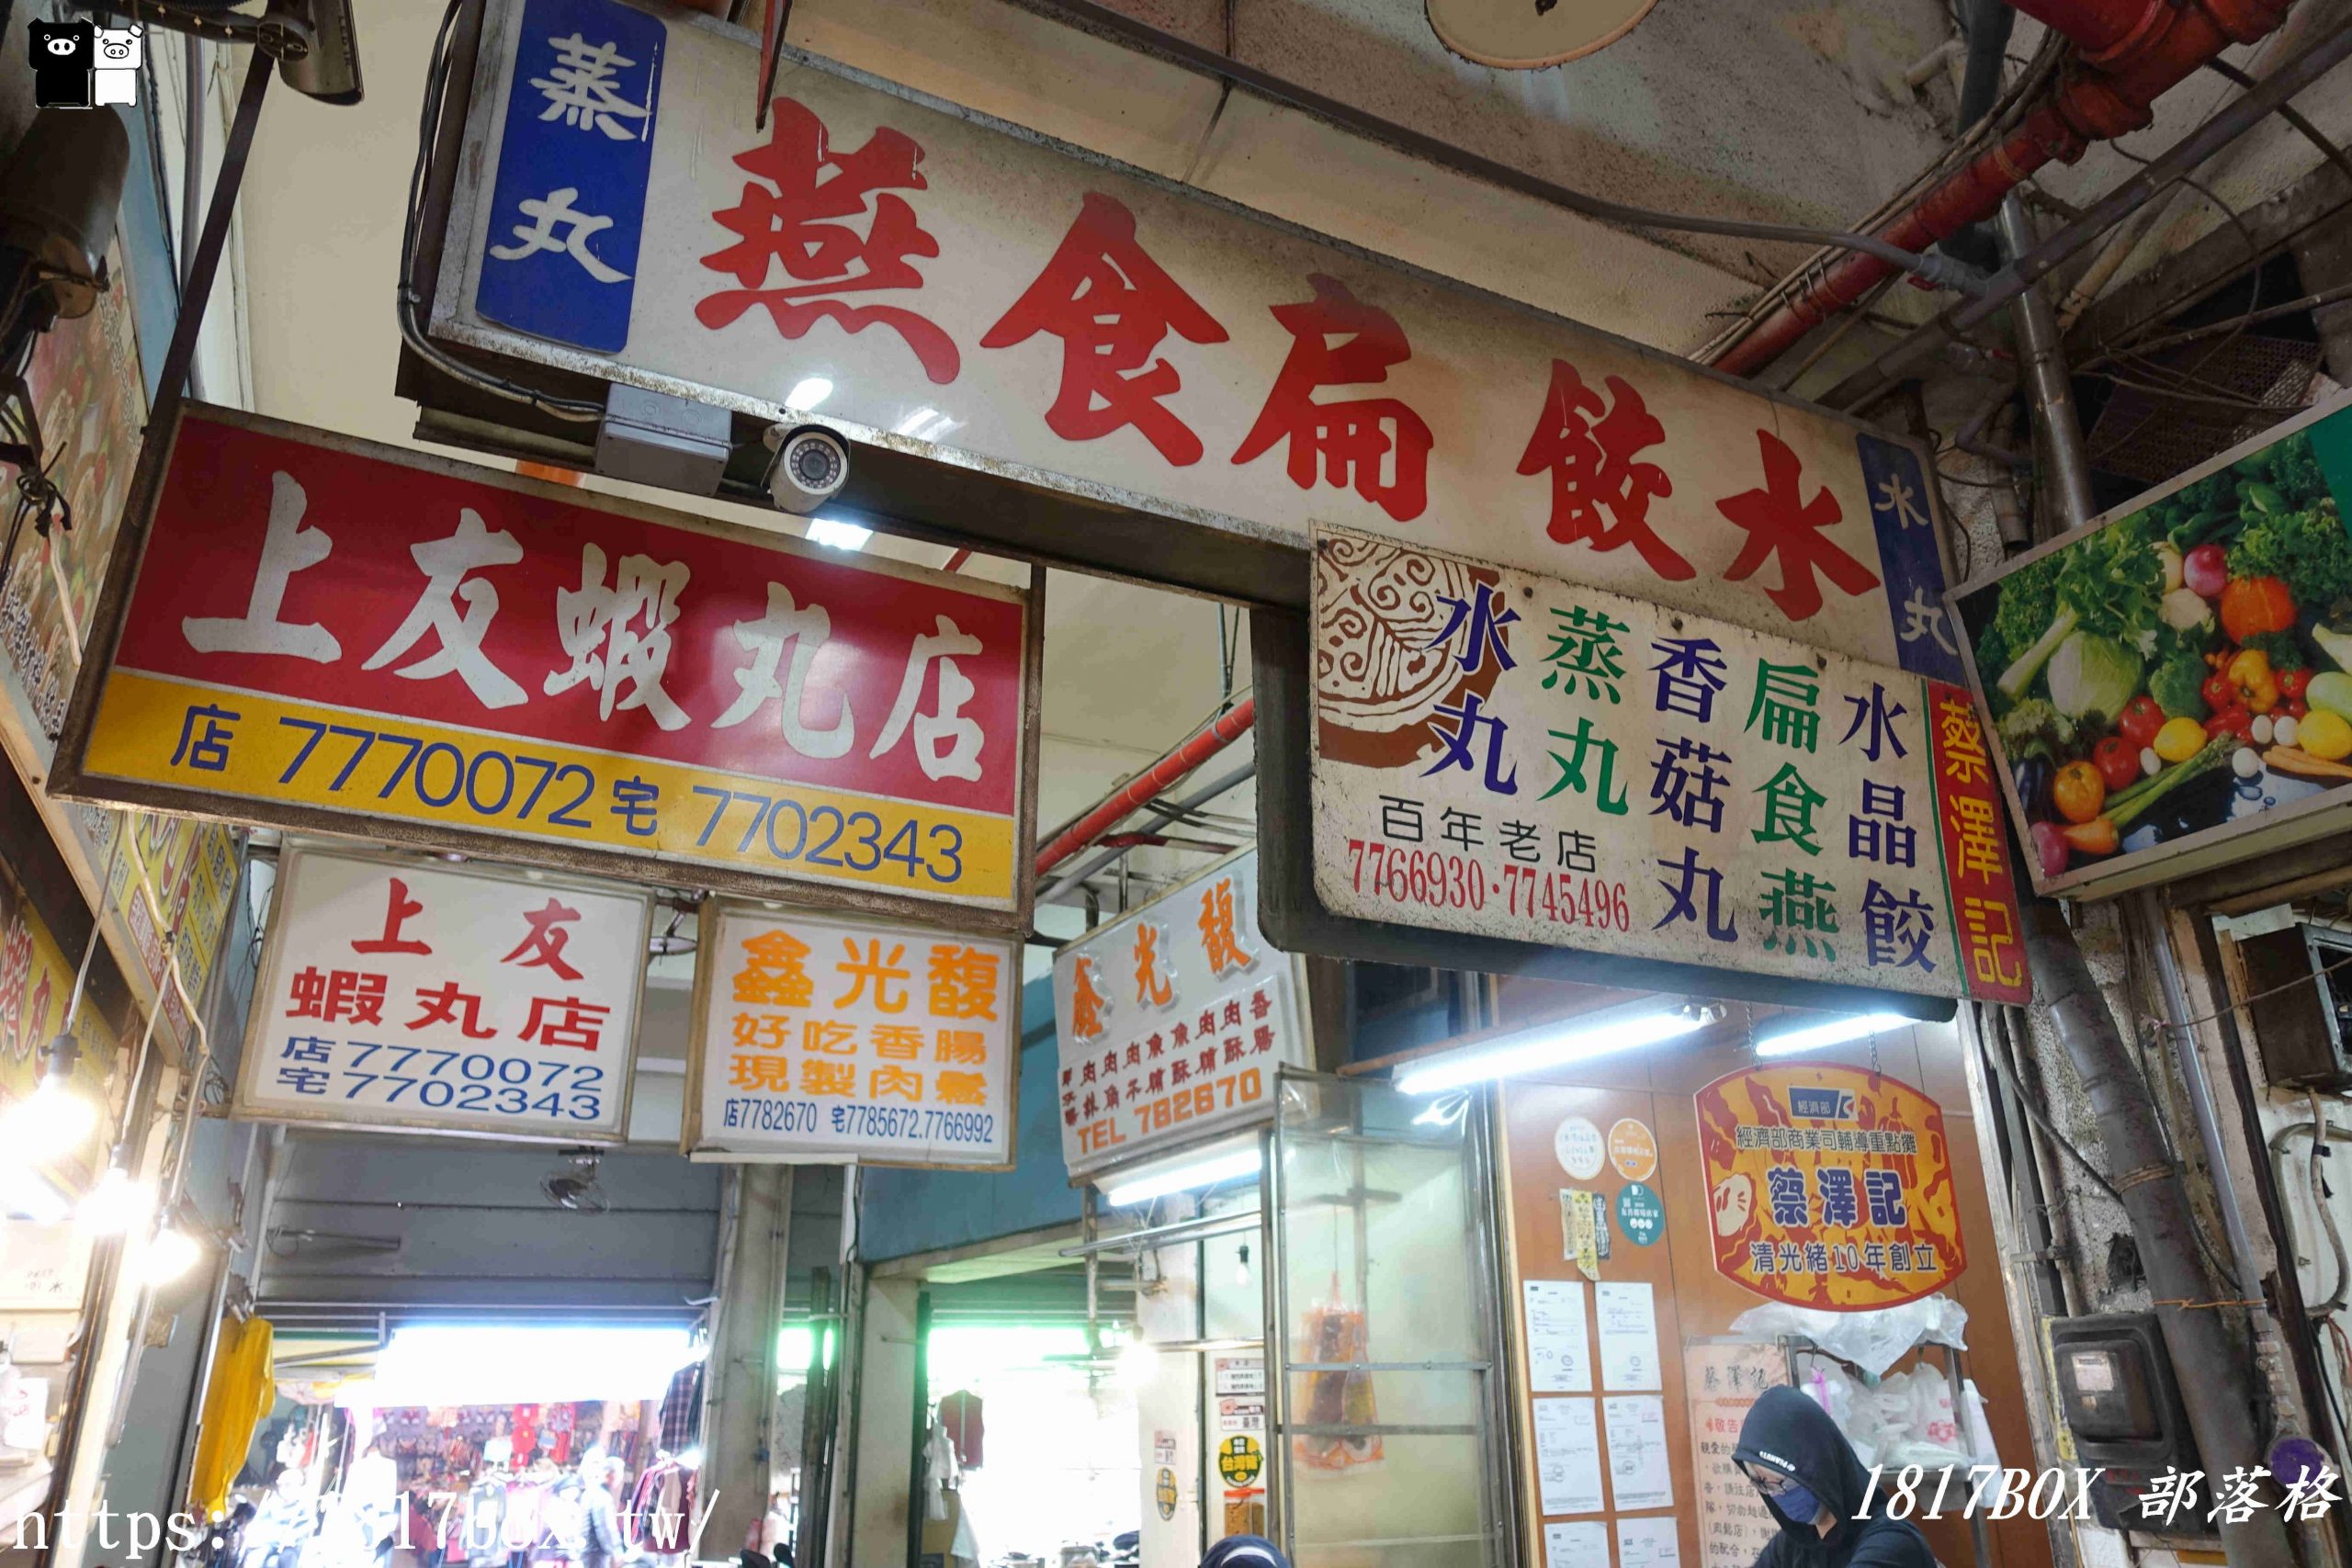 【彰化。鹿港】蔡澤記。隱藏在第一市場裡的百年小吃美食 @1817BOX部落格